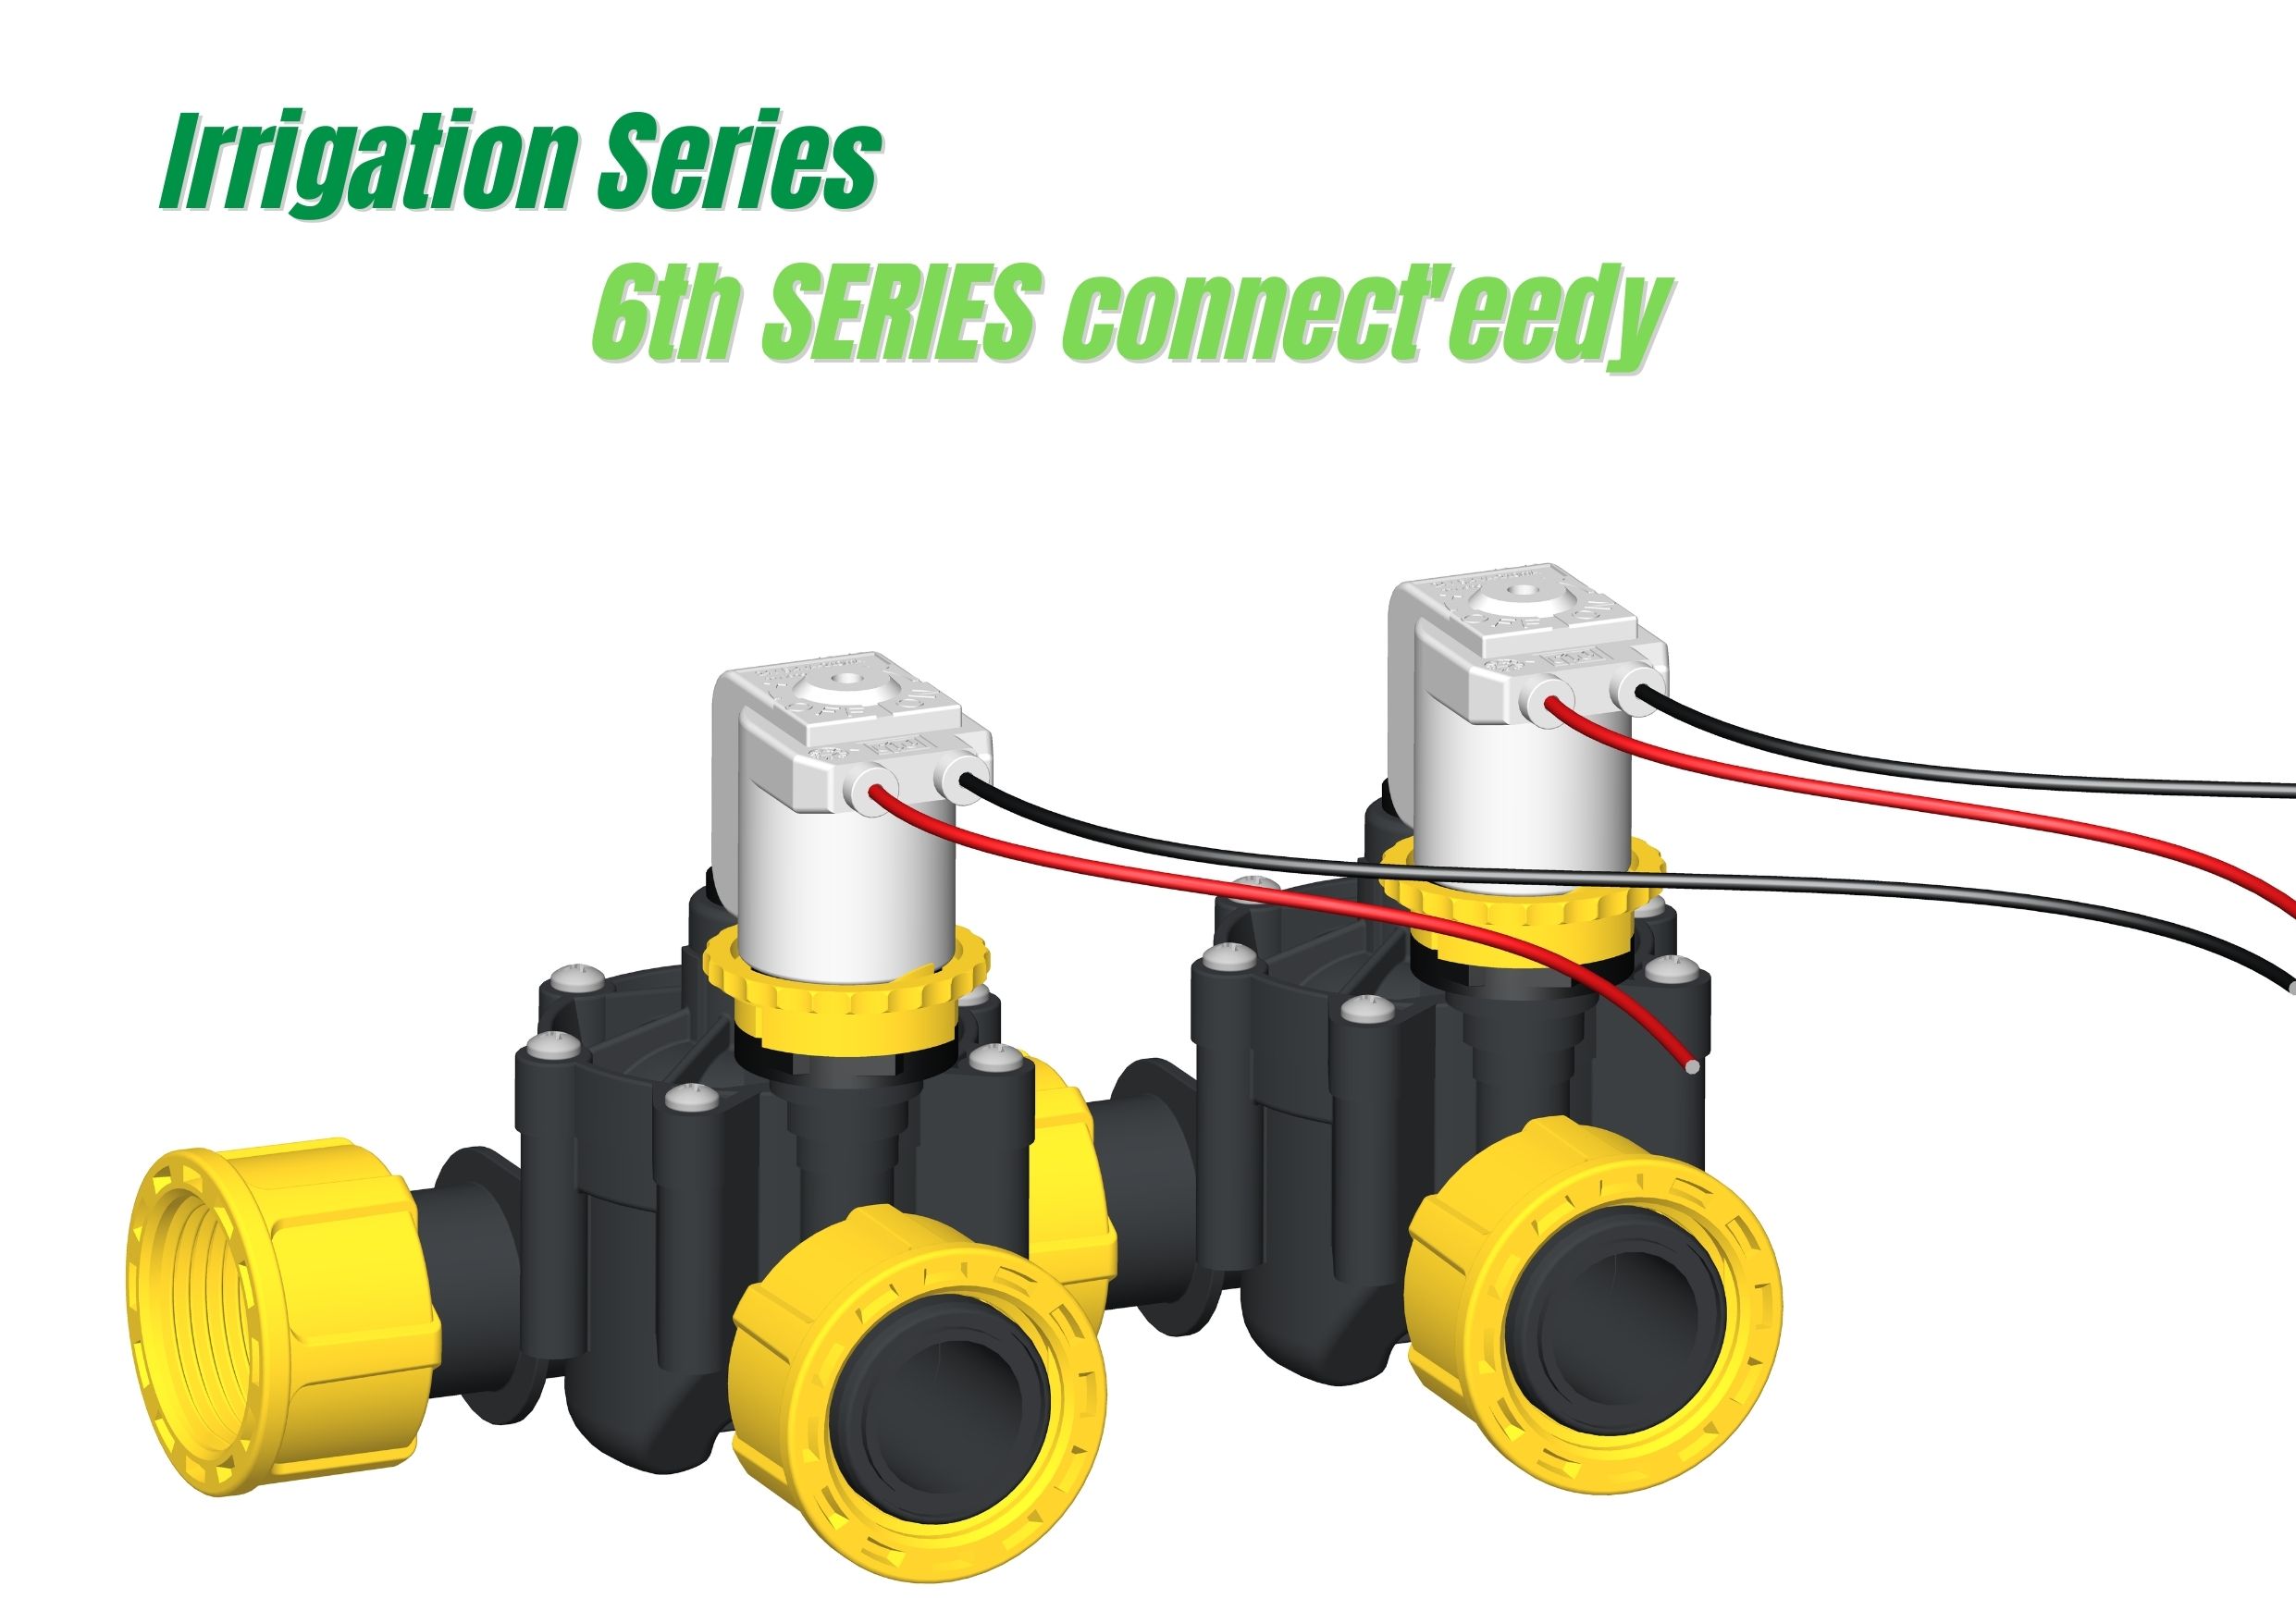 RPE präsentiert die 6th Series Conncet'eedy - Modulares Elektroventil für die Bewässerung